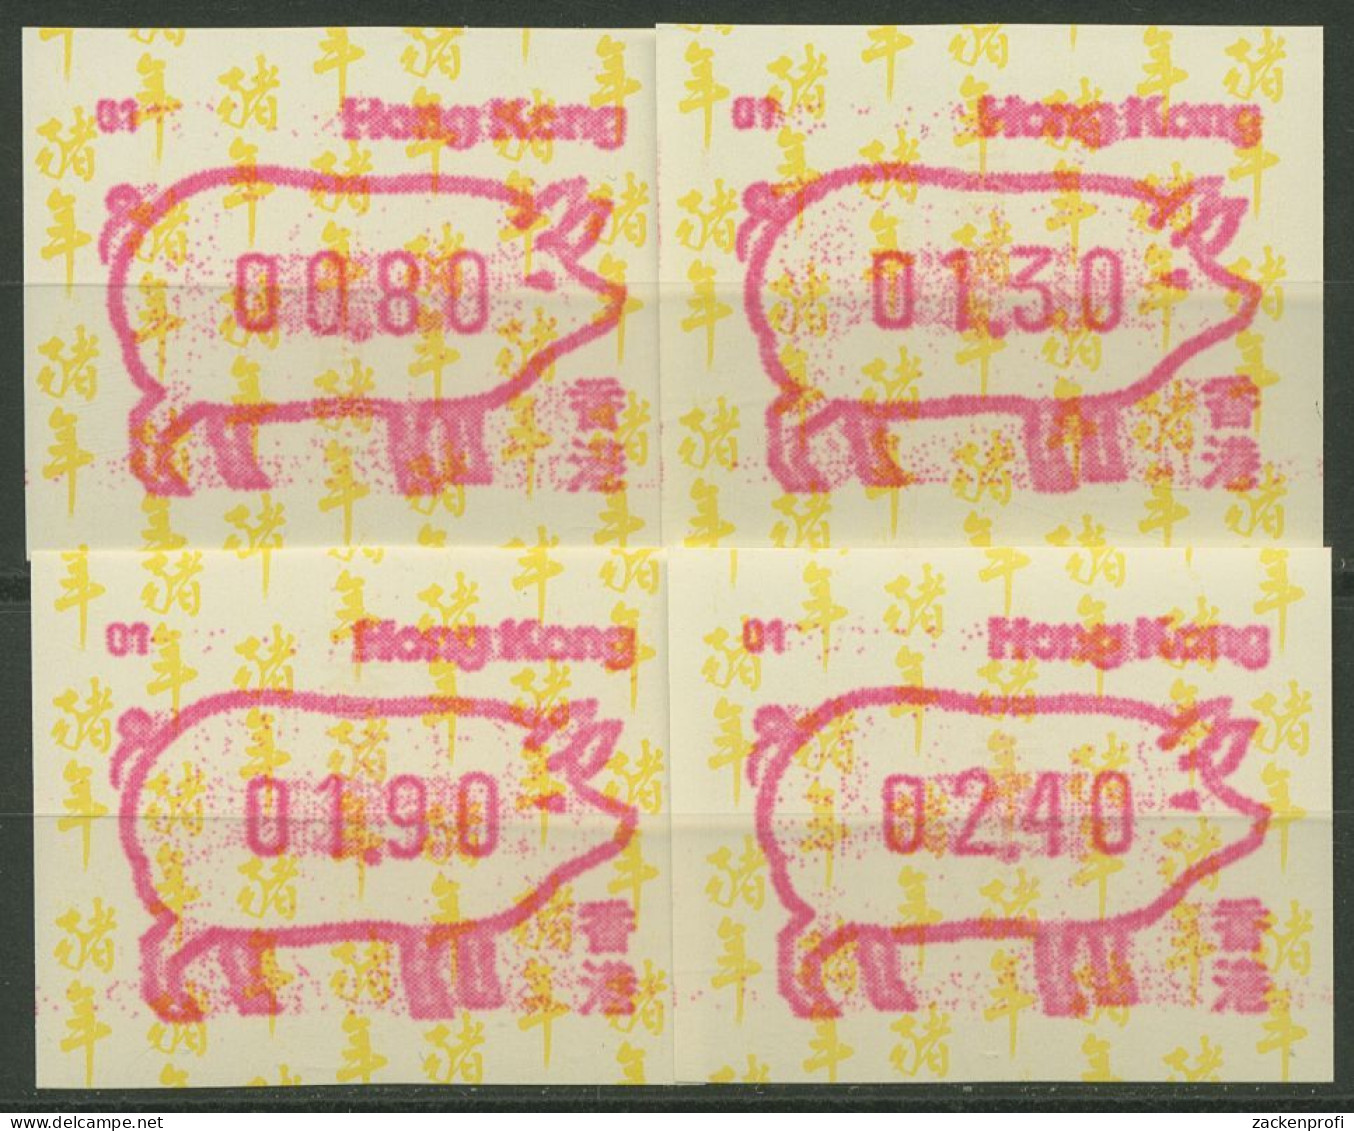 Hongkong 1995 Jahr Des Schweins Automatenmarke 10.1 S1 Automat 01 Postfrisch - Distributors